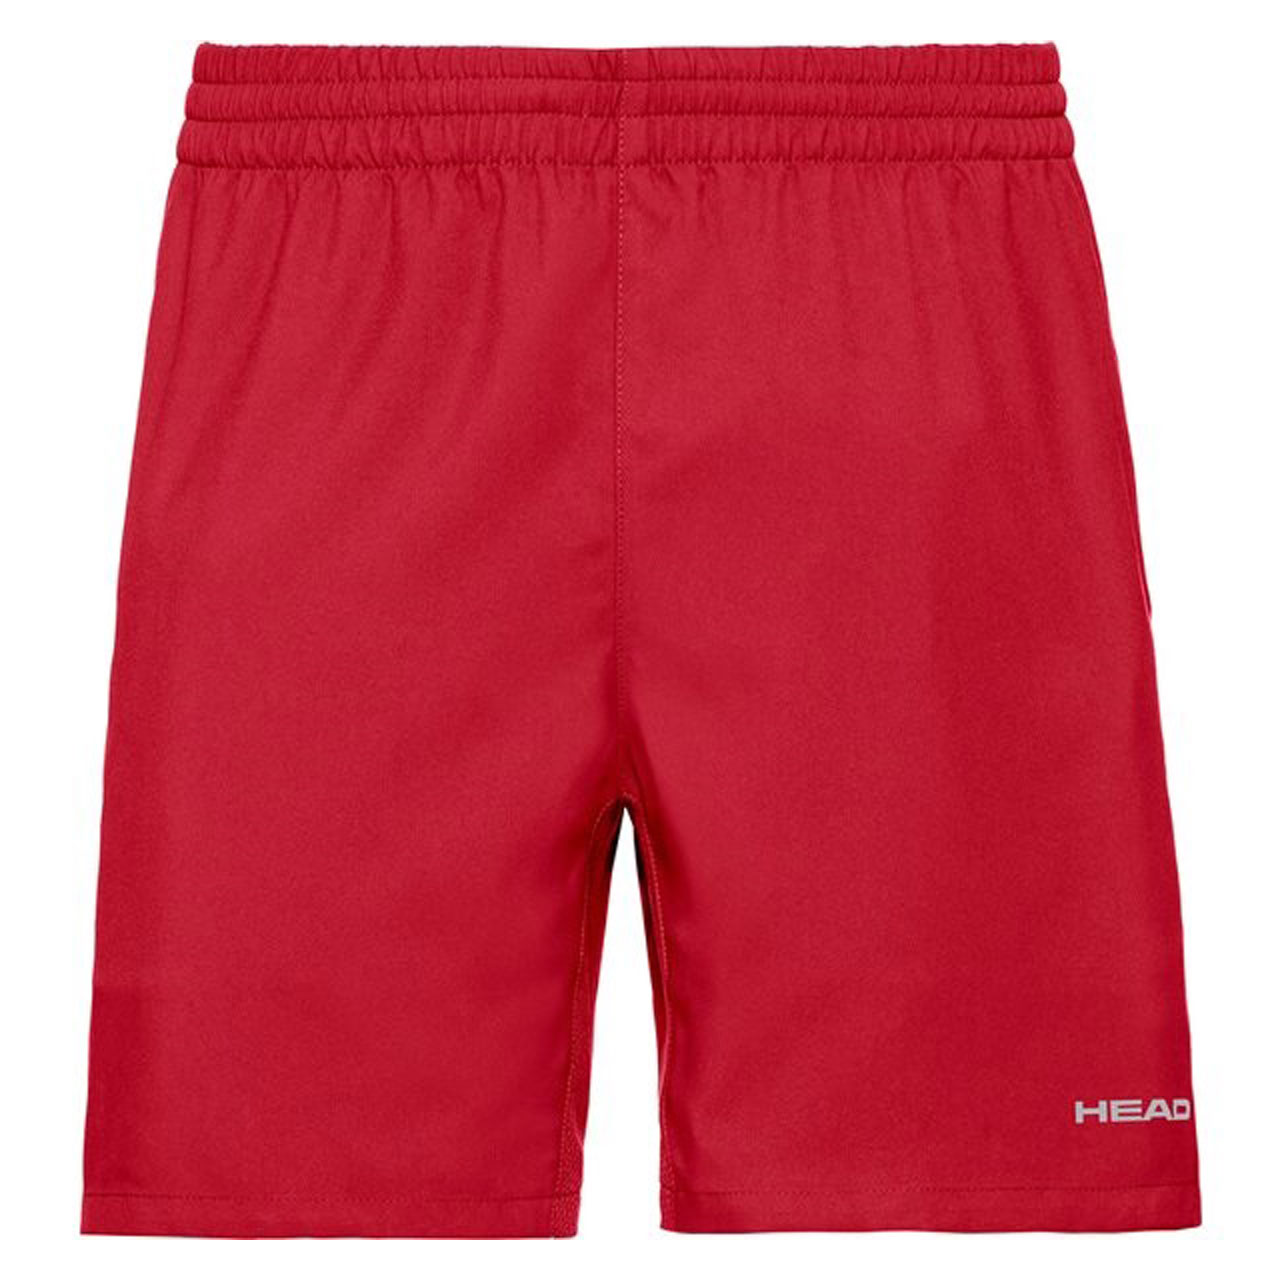 Herren Club Shorts